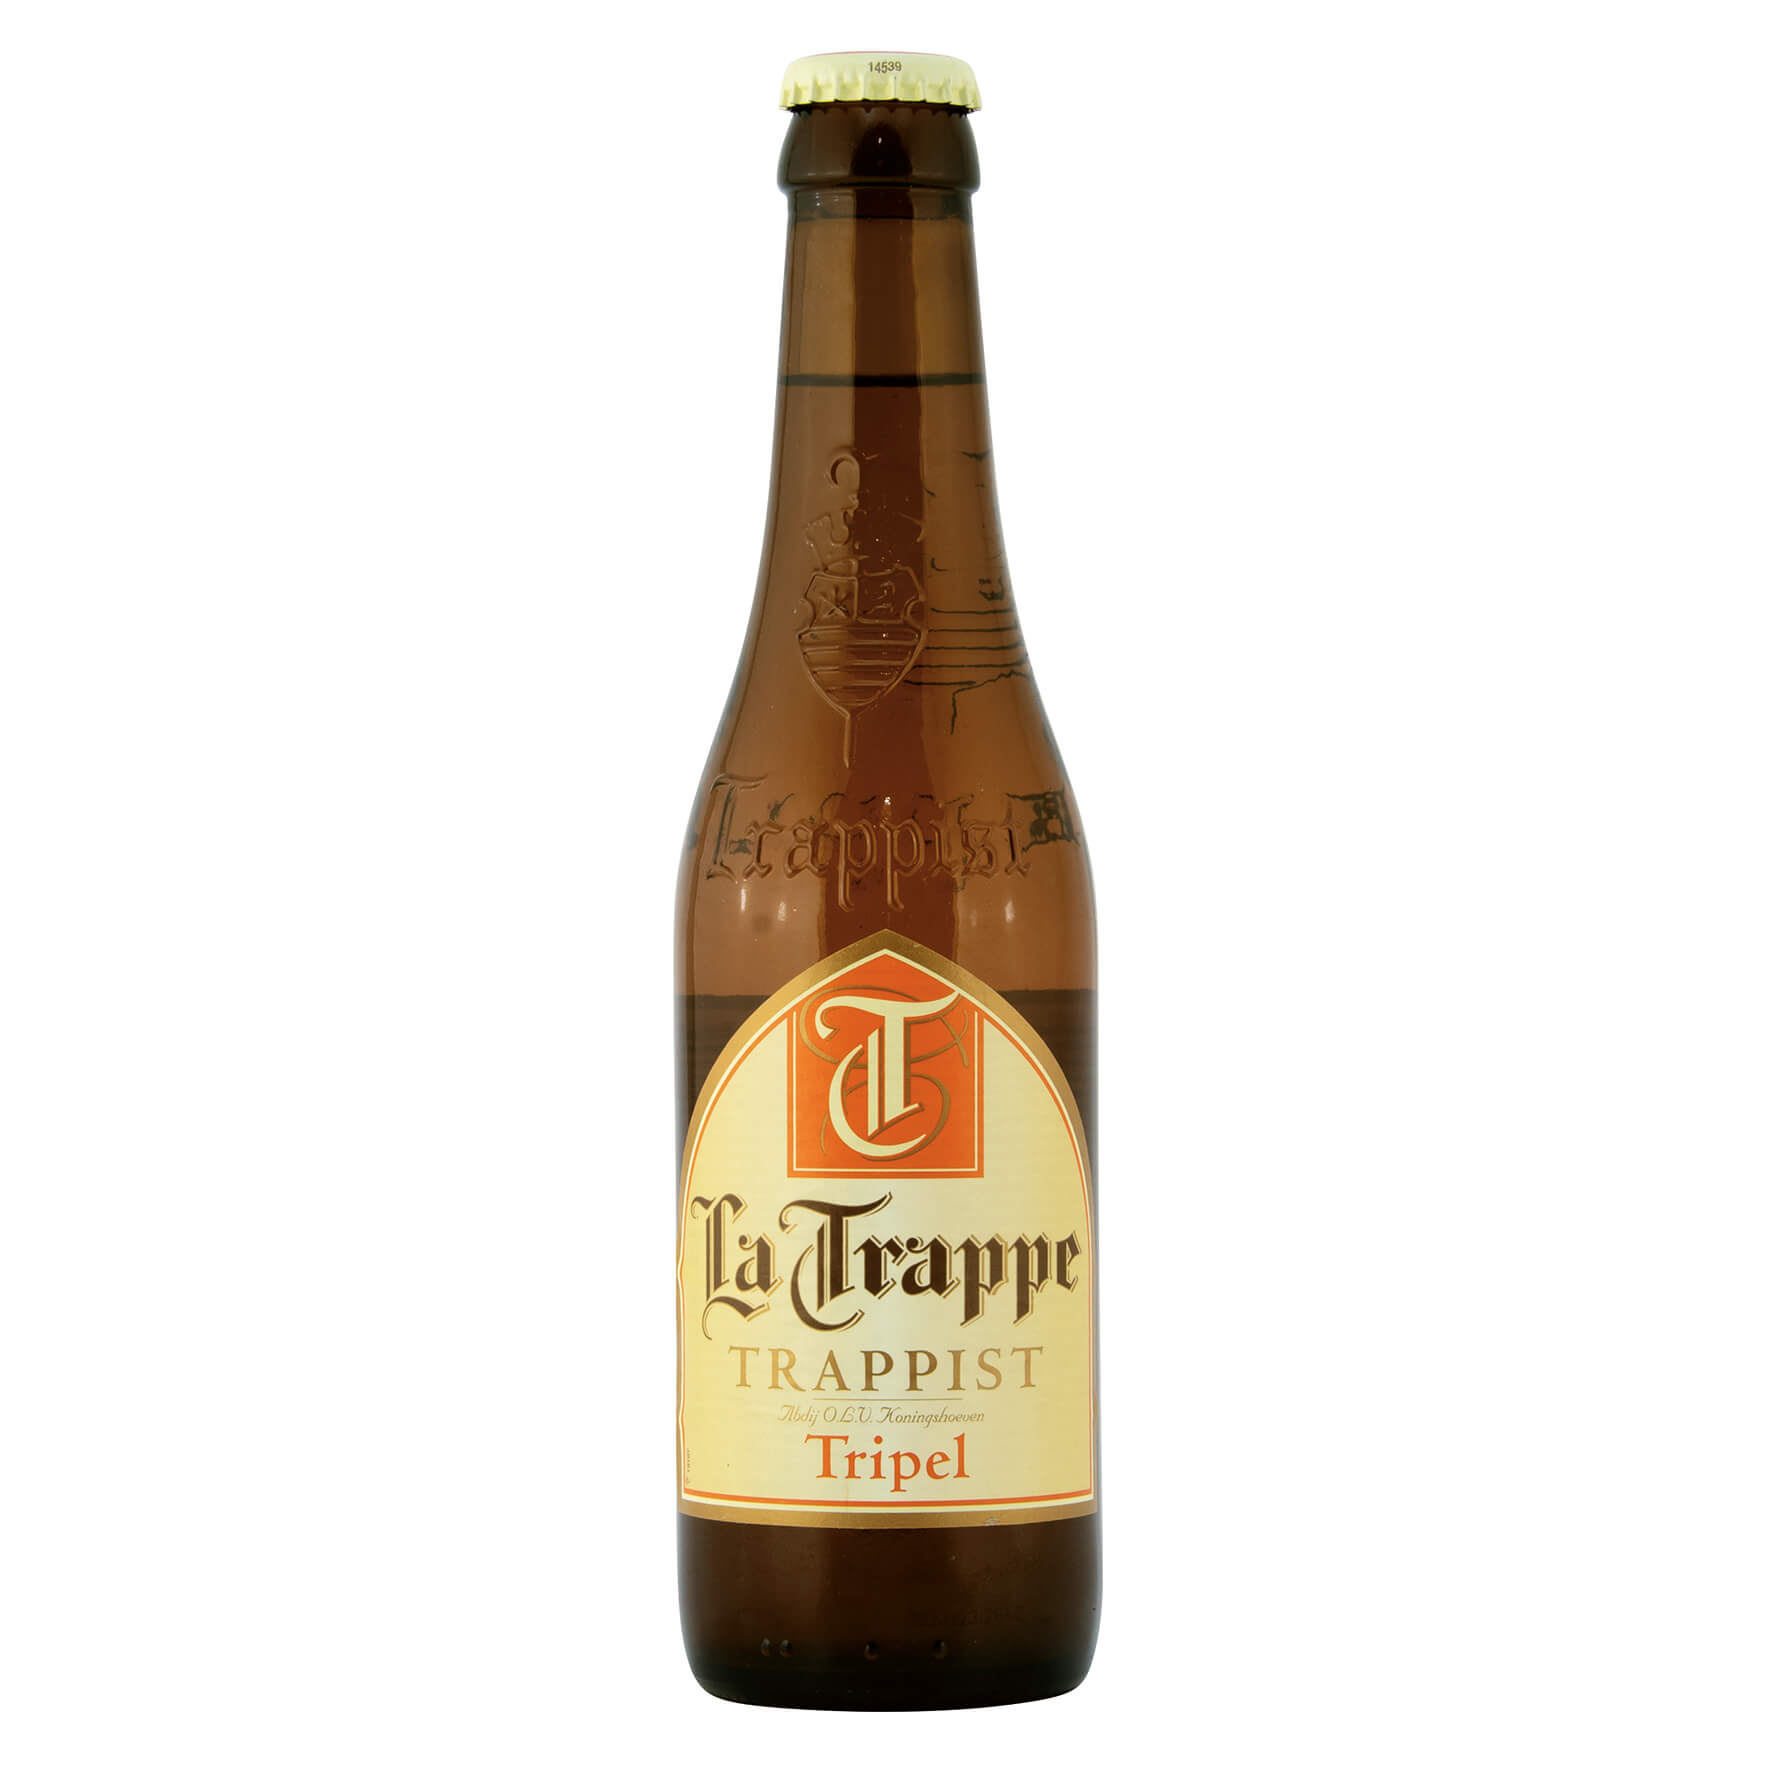 Ла трапп. Ла Траппе пиво Триппель. Триппель пиво Латрап 0,75. La Trappe blond 0.75. Ла Трапп сорта.